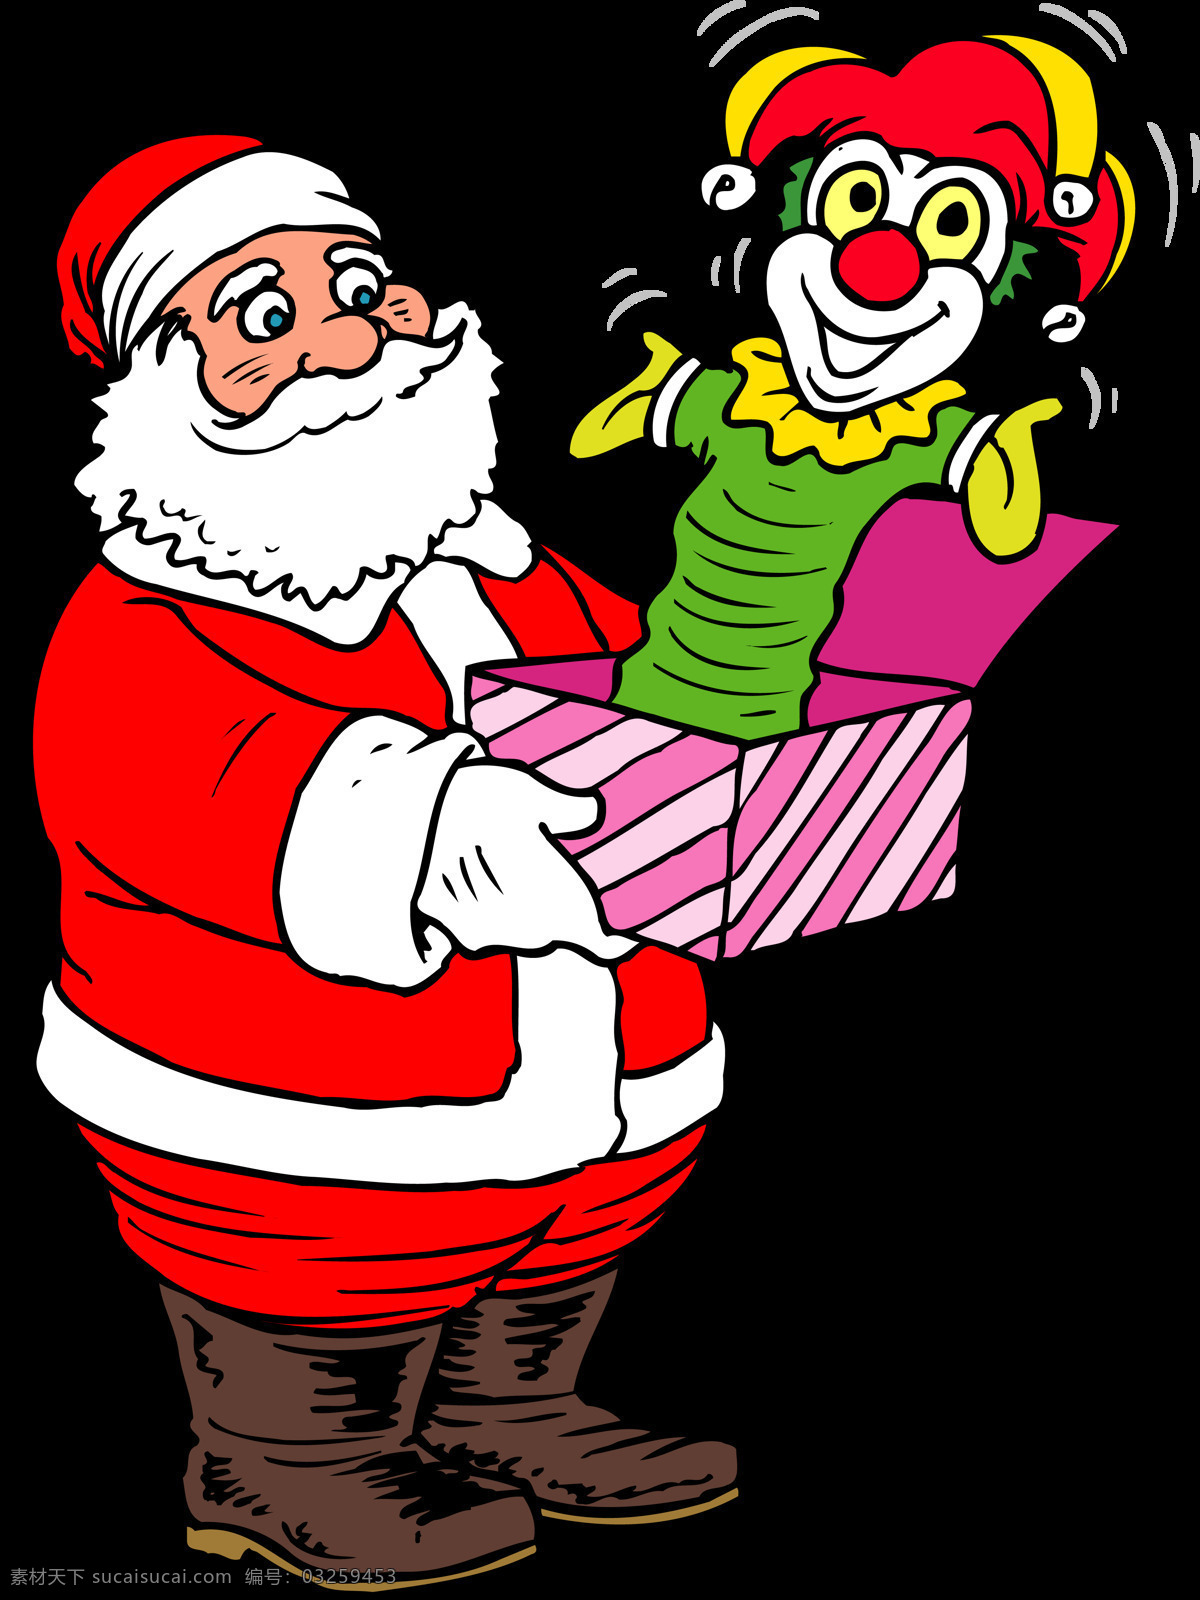 圣诞老人 礼物 元素 png元素 惊喜 免抠元素 圣诞节 手绘 透明元素 小丑